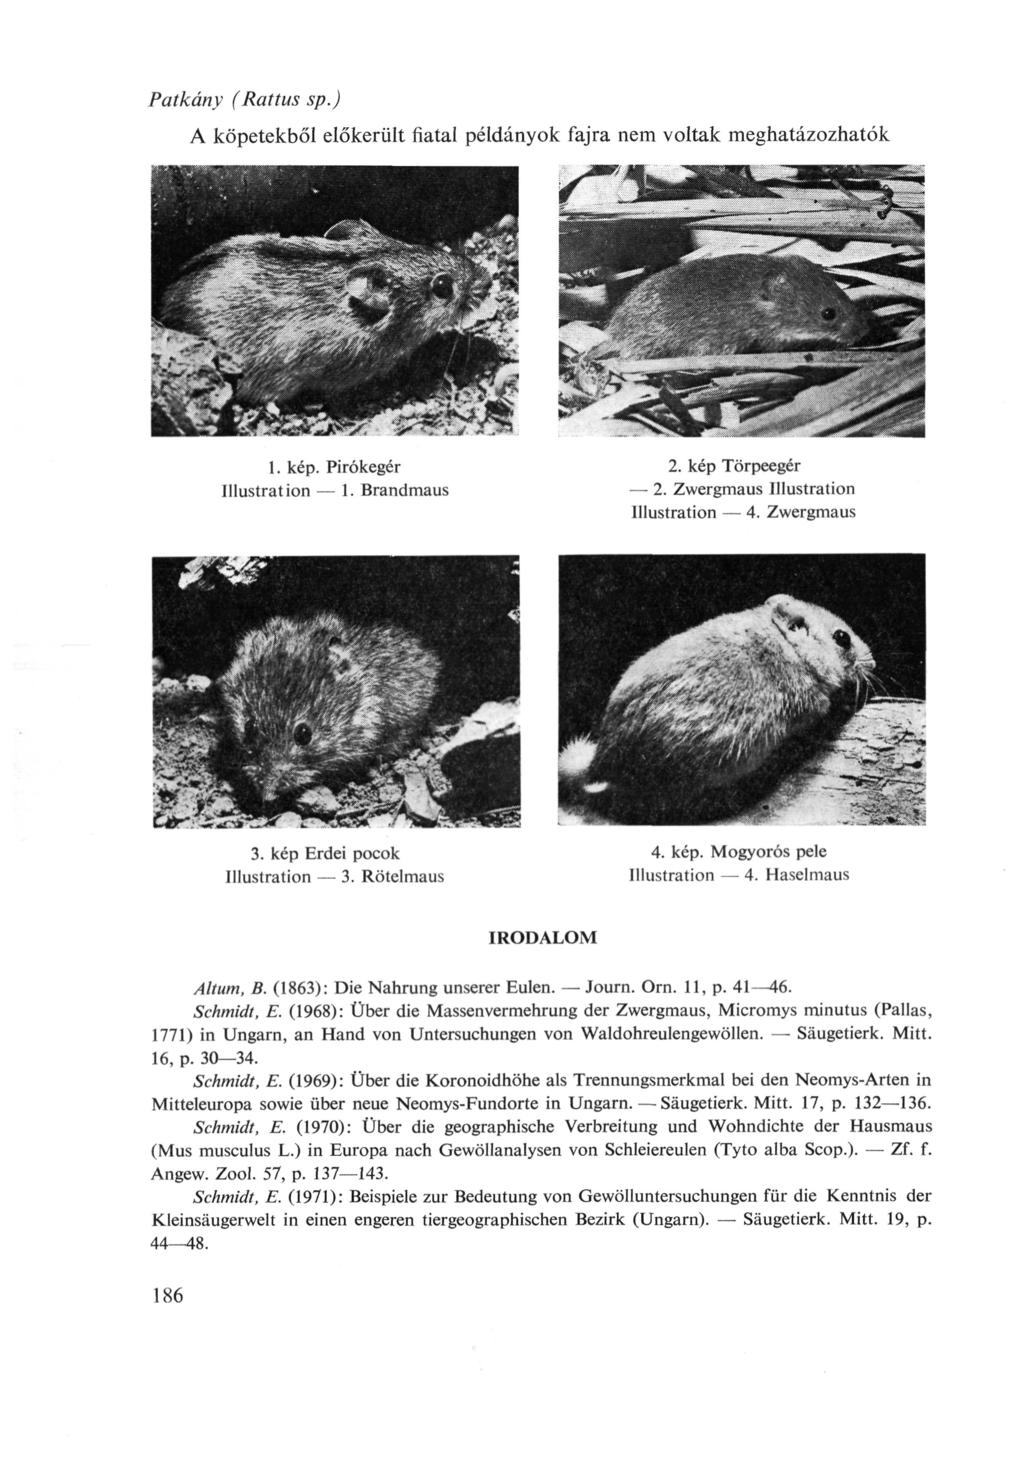 Patkány (Rattus sp.) A köpetekből előkerült fiatal példányok fajra nem voltak meghatázozhatók 1. kép. Pirókegér Illustration 1. Brandmaus 2. kép Törpeegér 2. Zwergmaus Illustration Illustration 4.